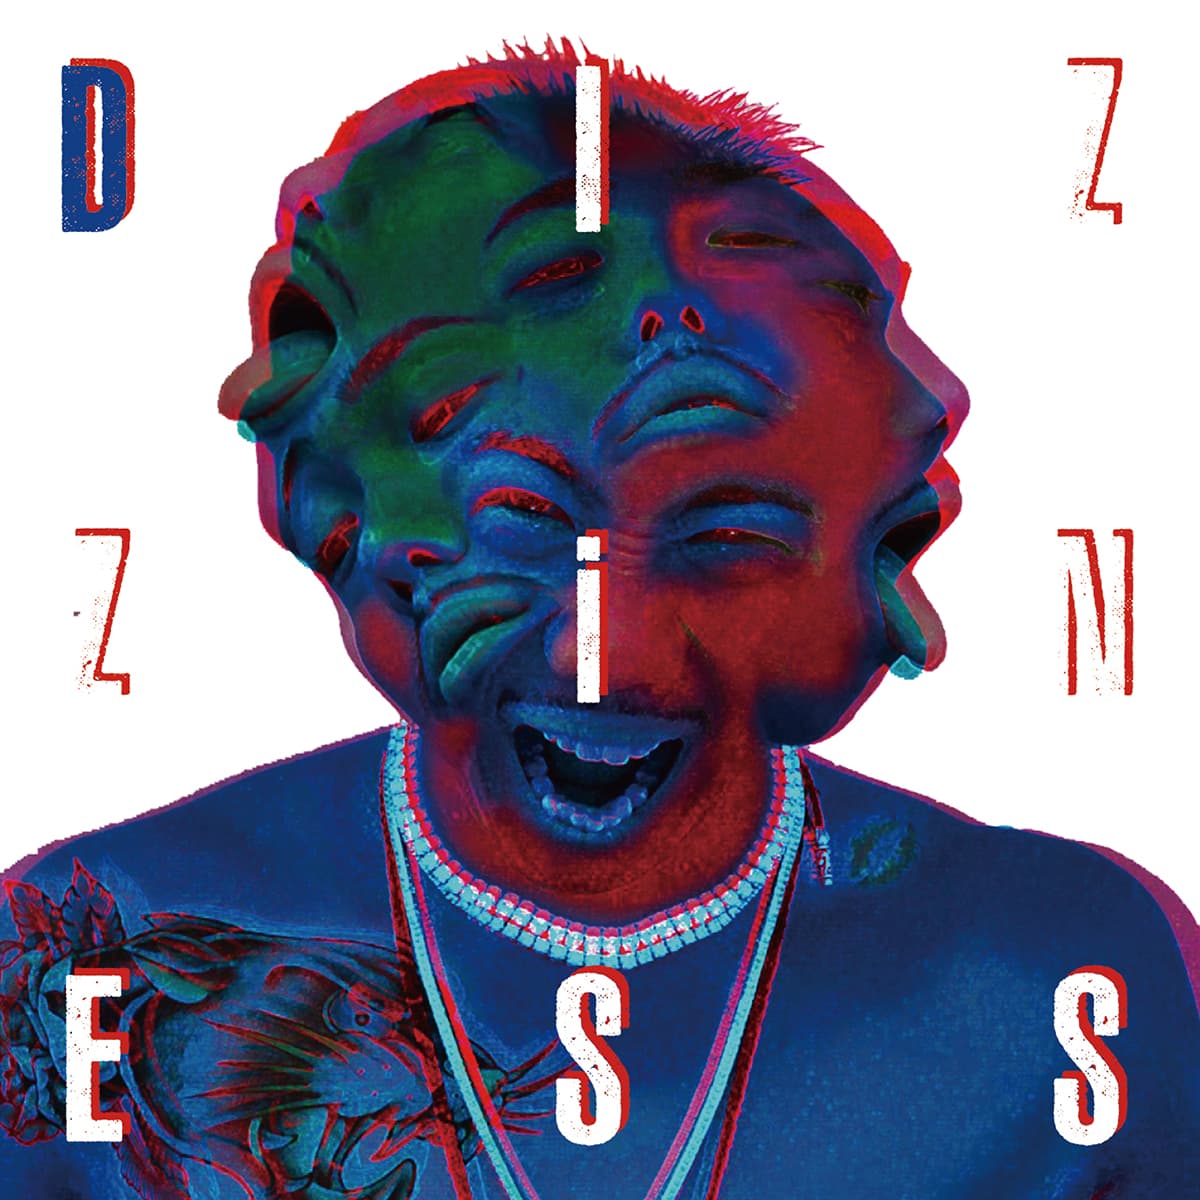 YDIZZY - 1st Album "DIZZiNESS" Release